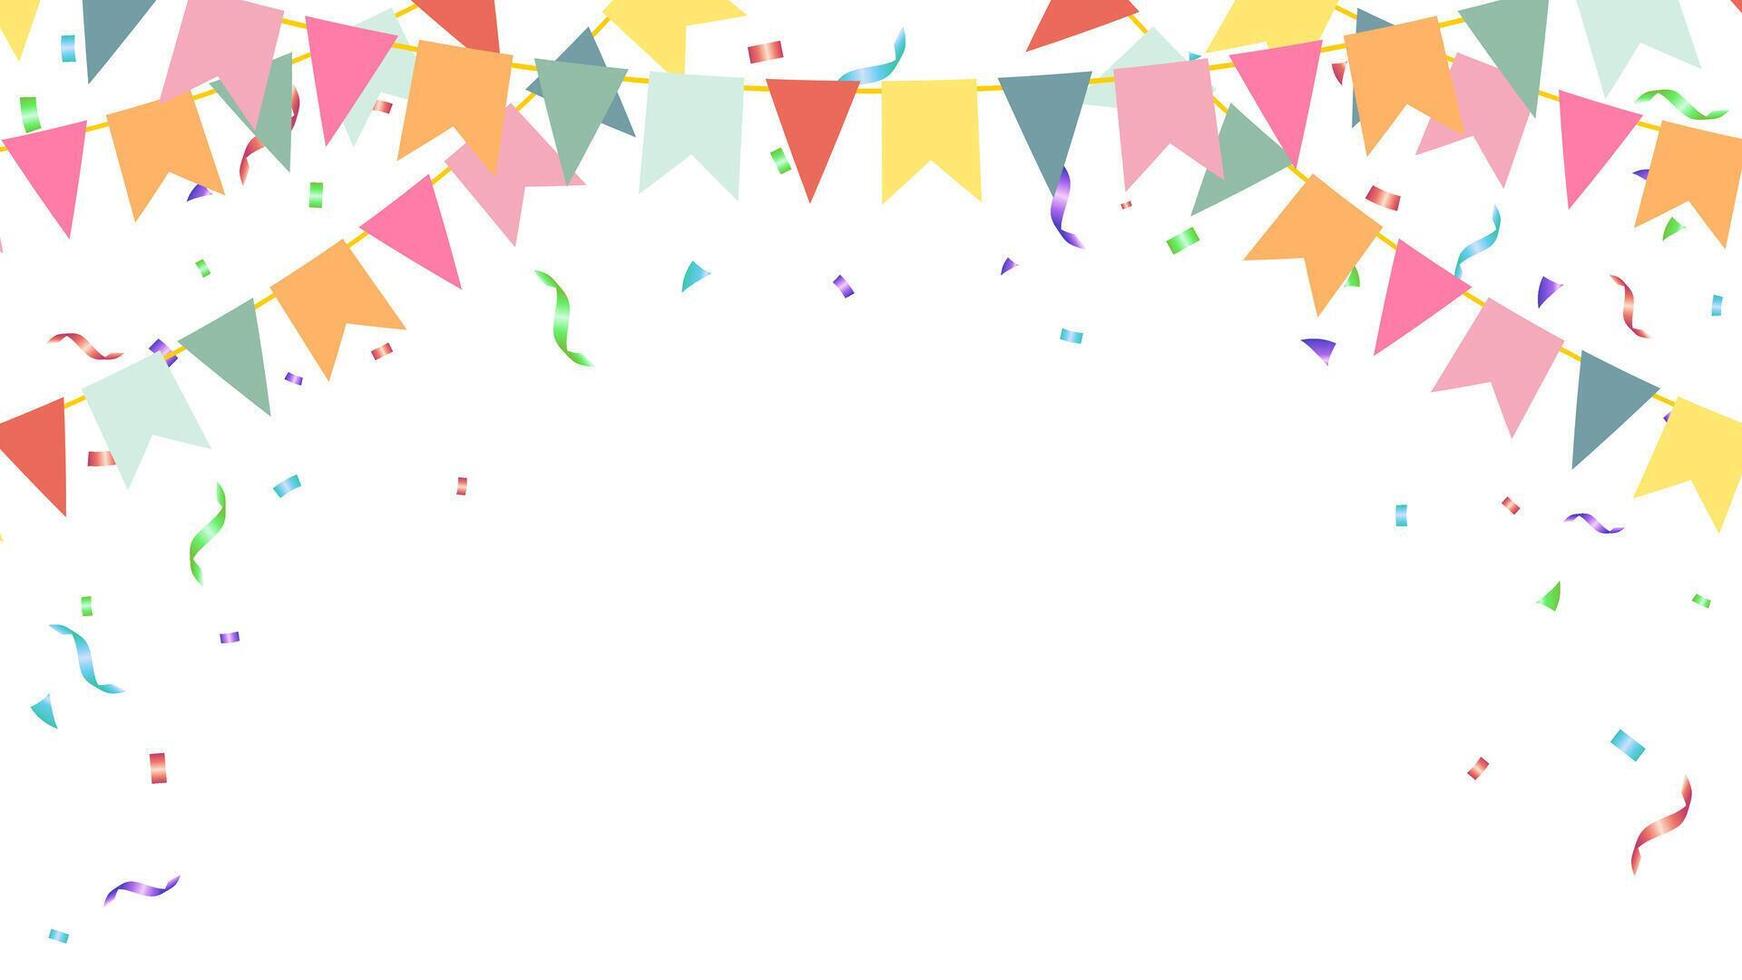 födelsedag, fest, årsdag, Semester dekoration element flaggväv papper flaggor och konfetti vektor